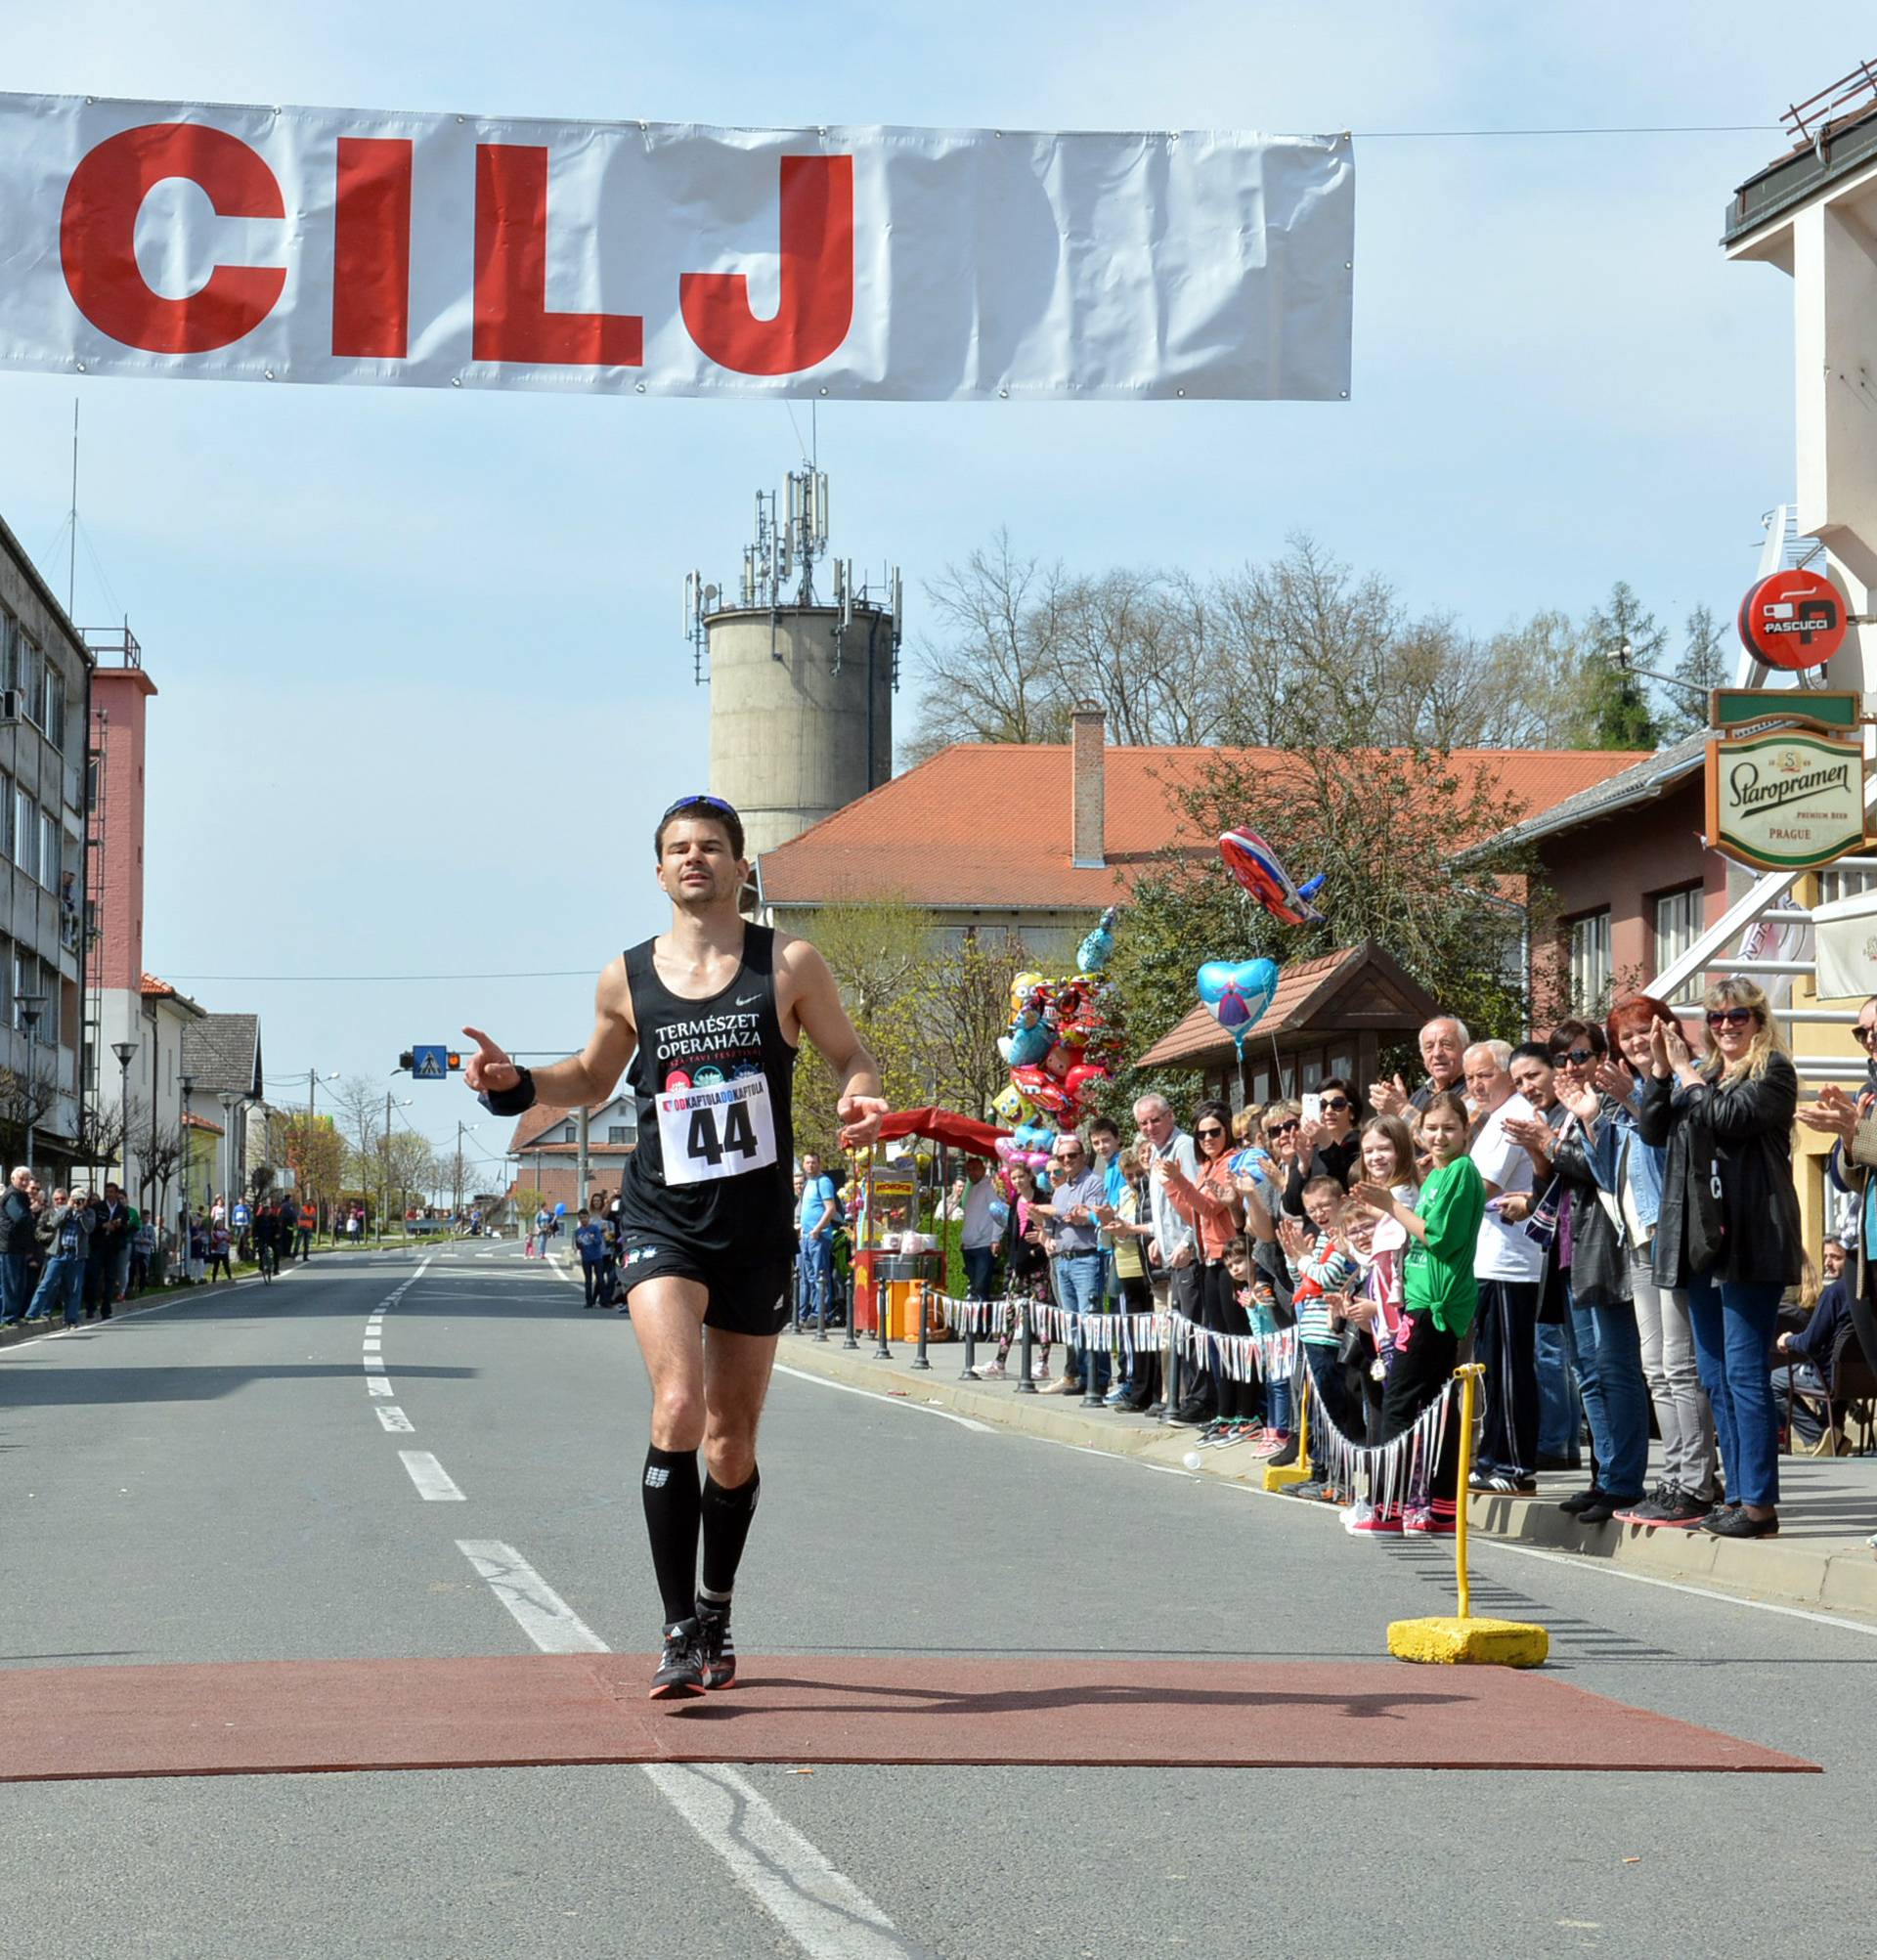 Mađar Peter Steib osvojio je našu najdužu cestovnu utrku